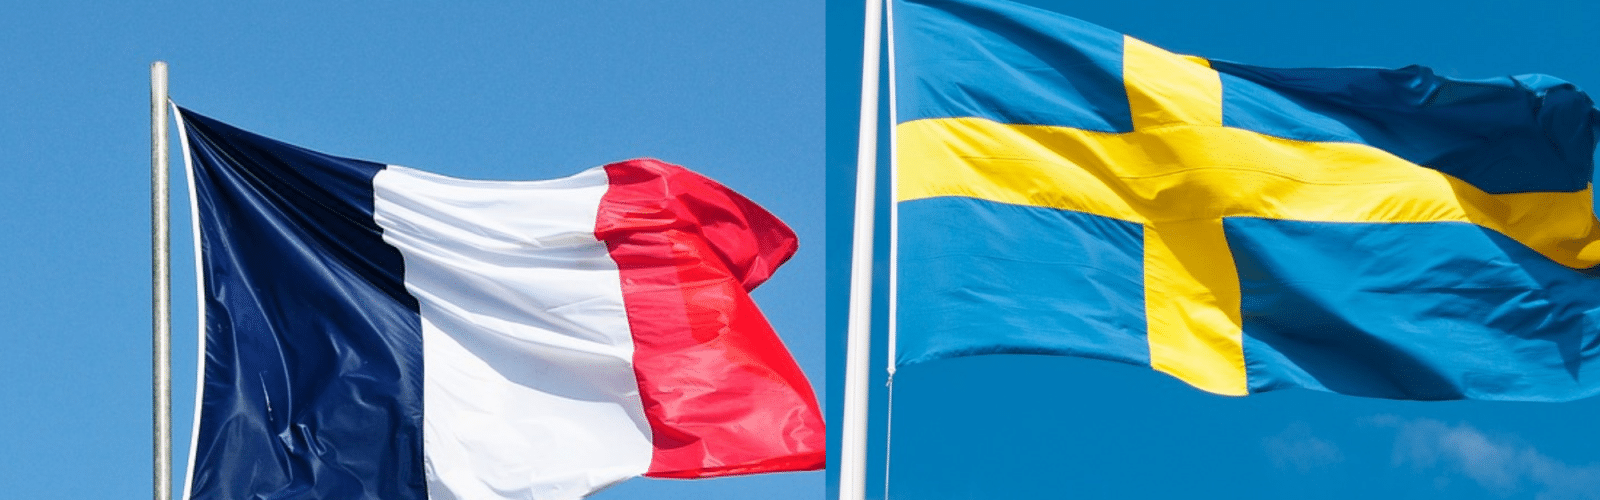 Image des drapeaux français et suédois